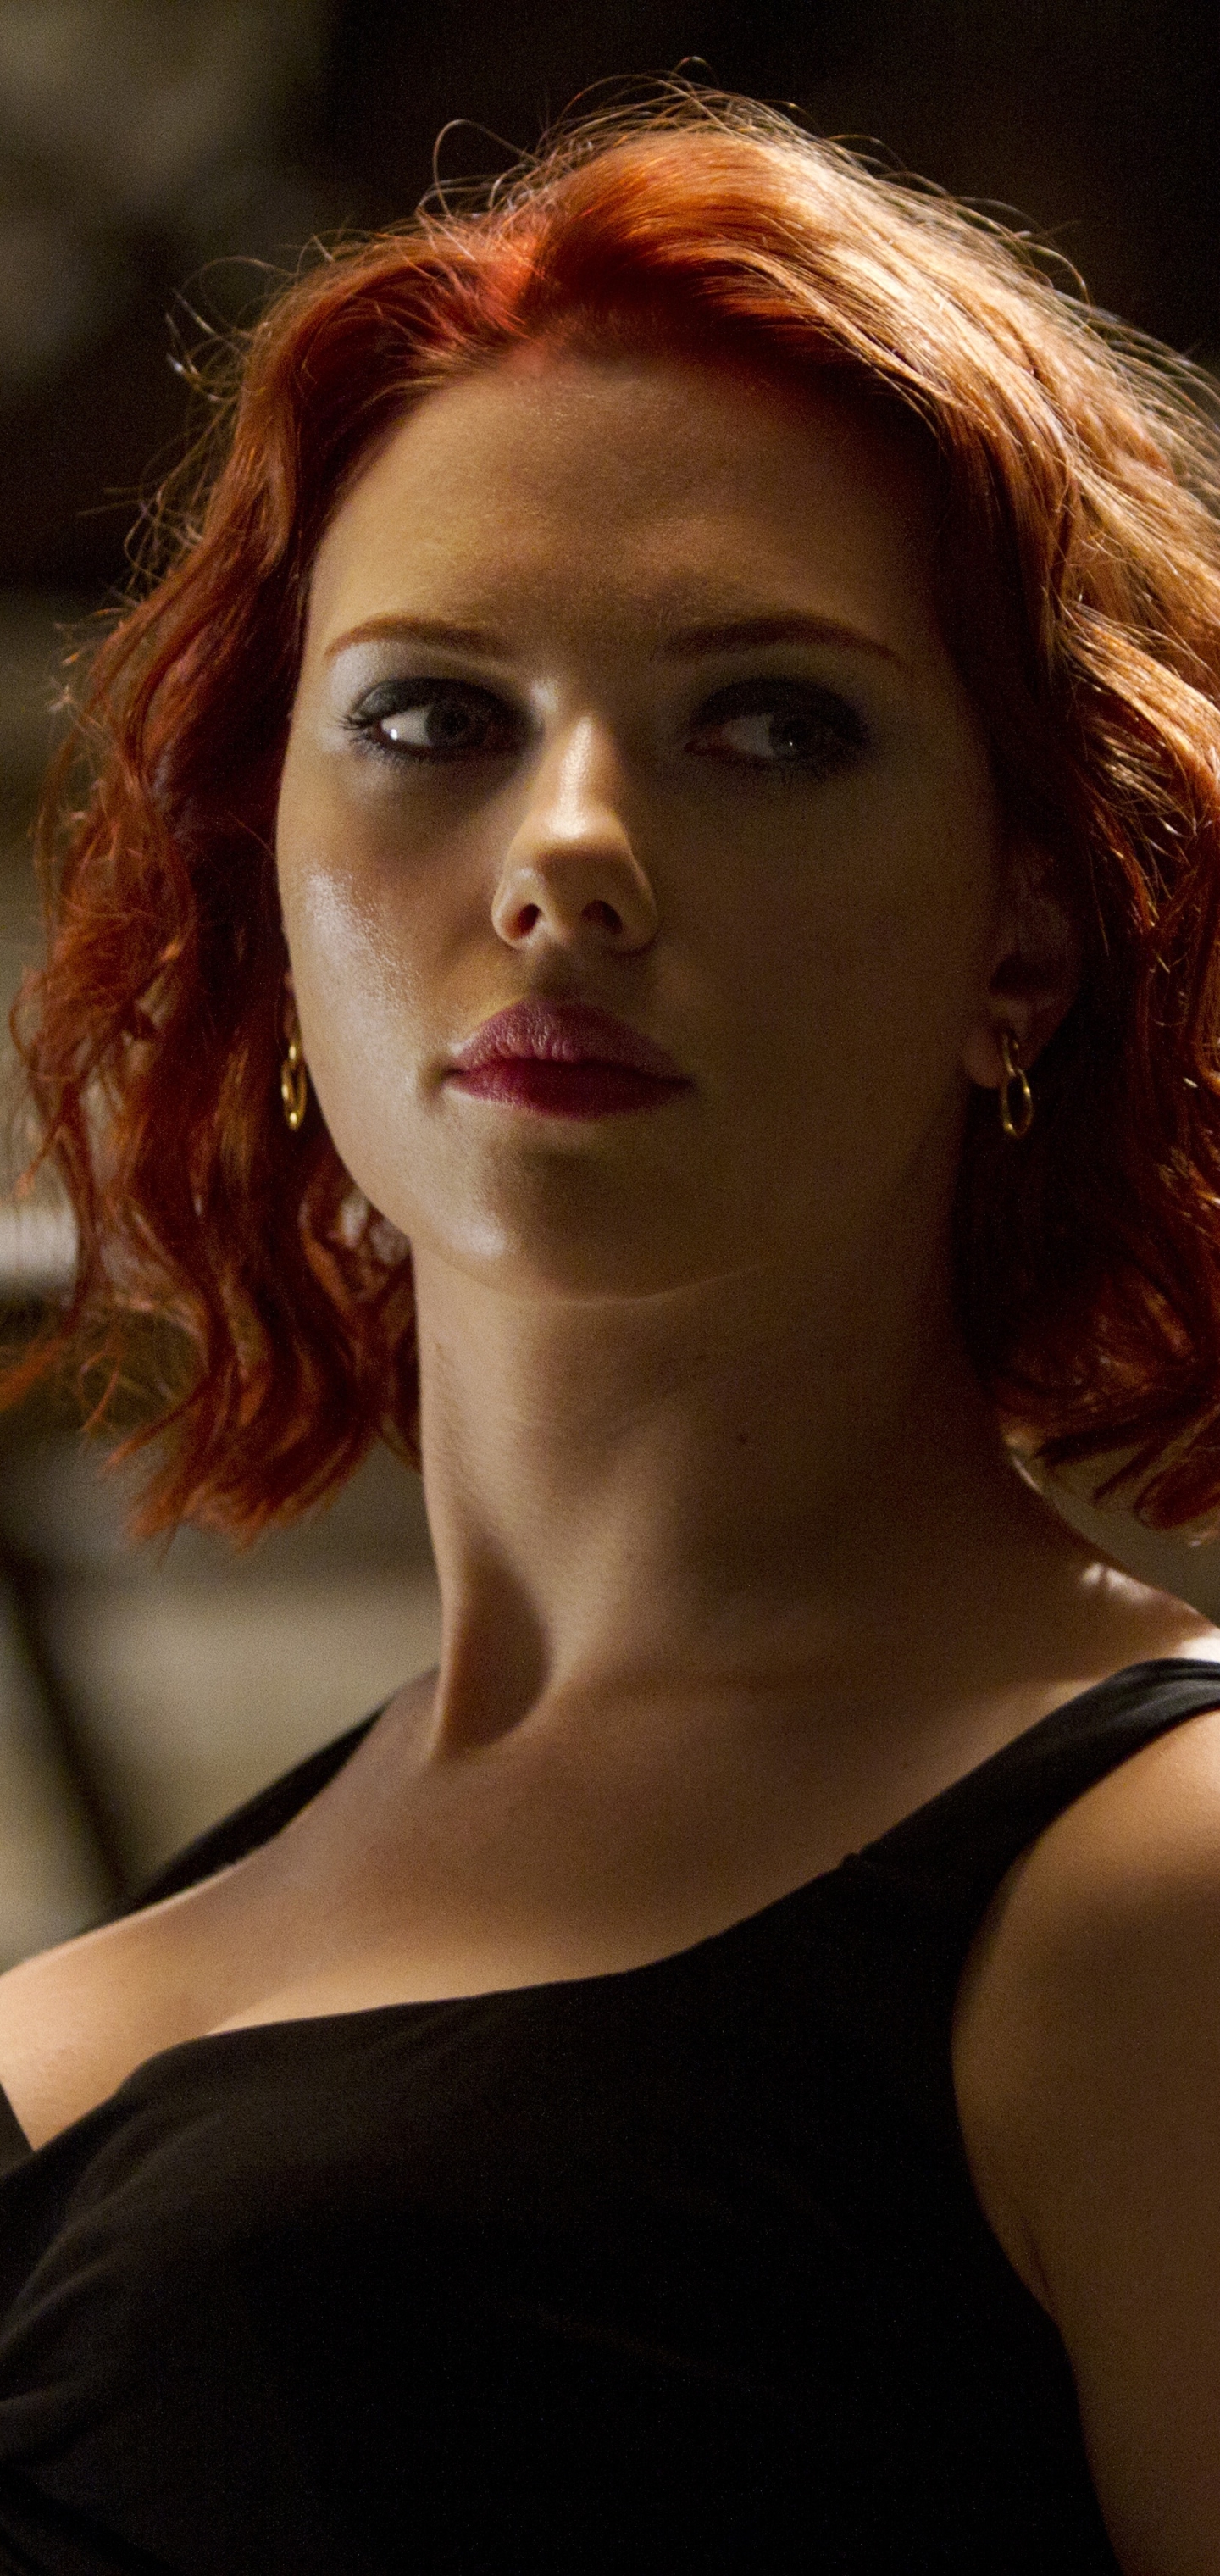 Descarga gratuita de fondo de pantalla para móvil de Scarlett Johansson, Los Vengadores, Películas, Natasha Romanoff.